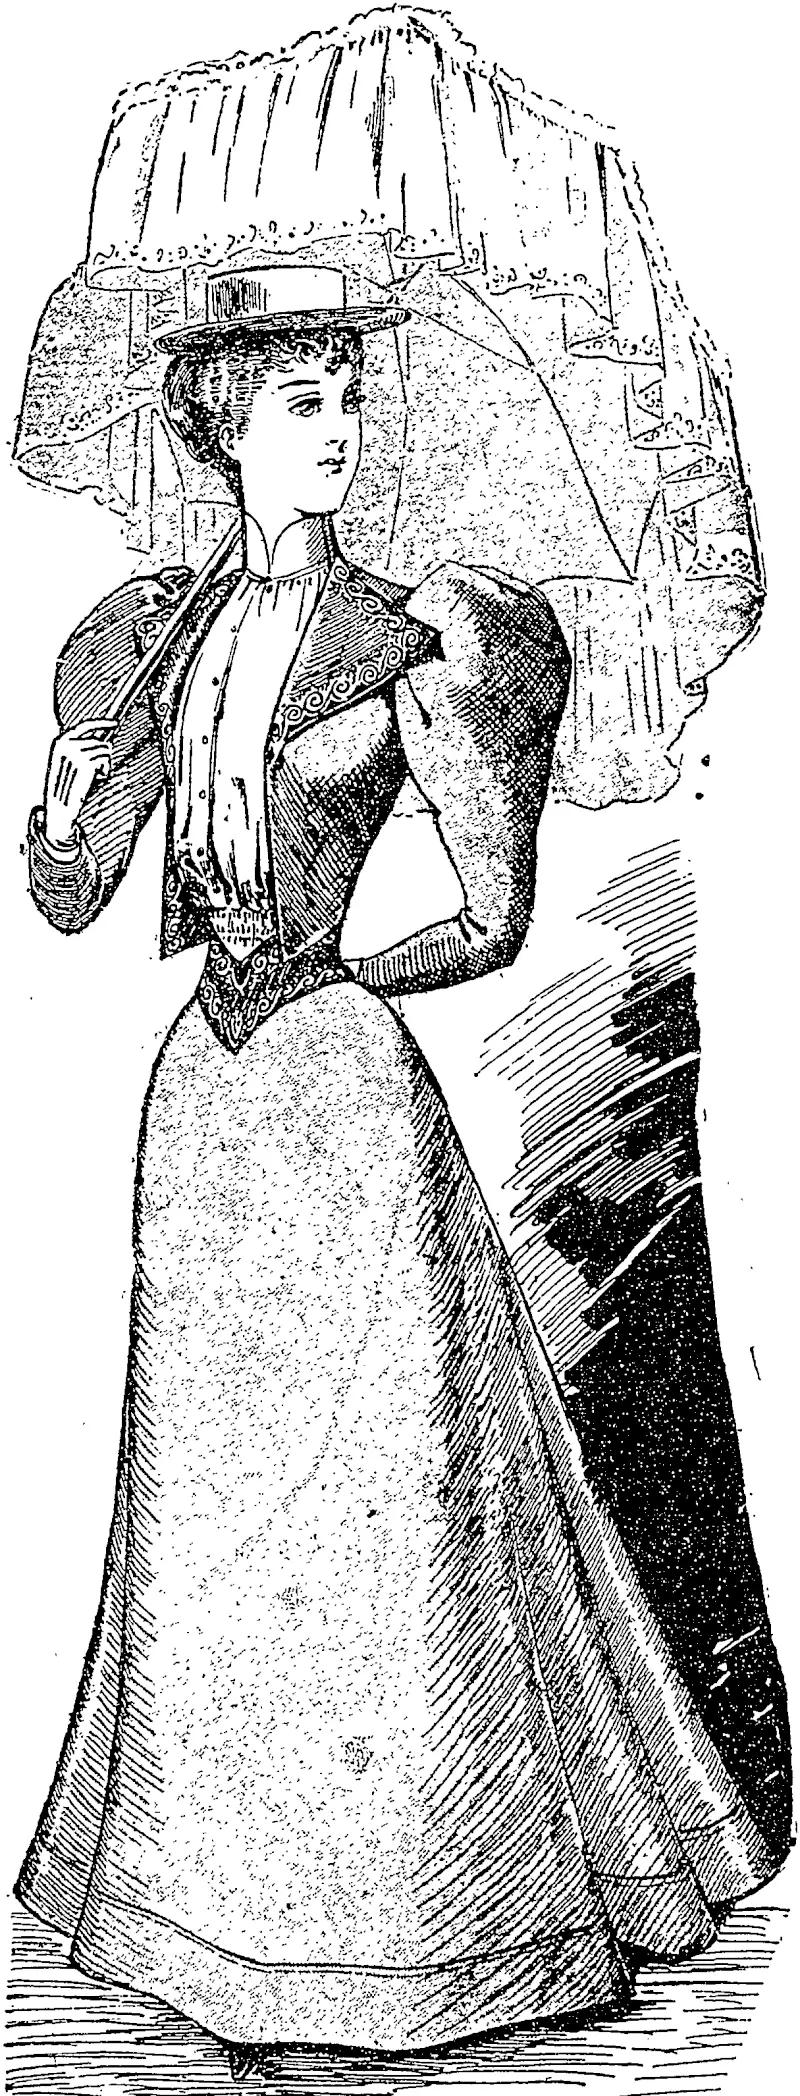 A TASTEFUL OUTDOOR COSTUME (Observer, 09 December 1893)